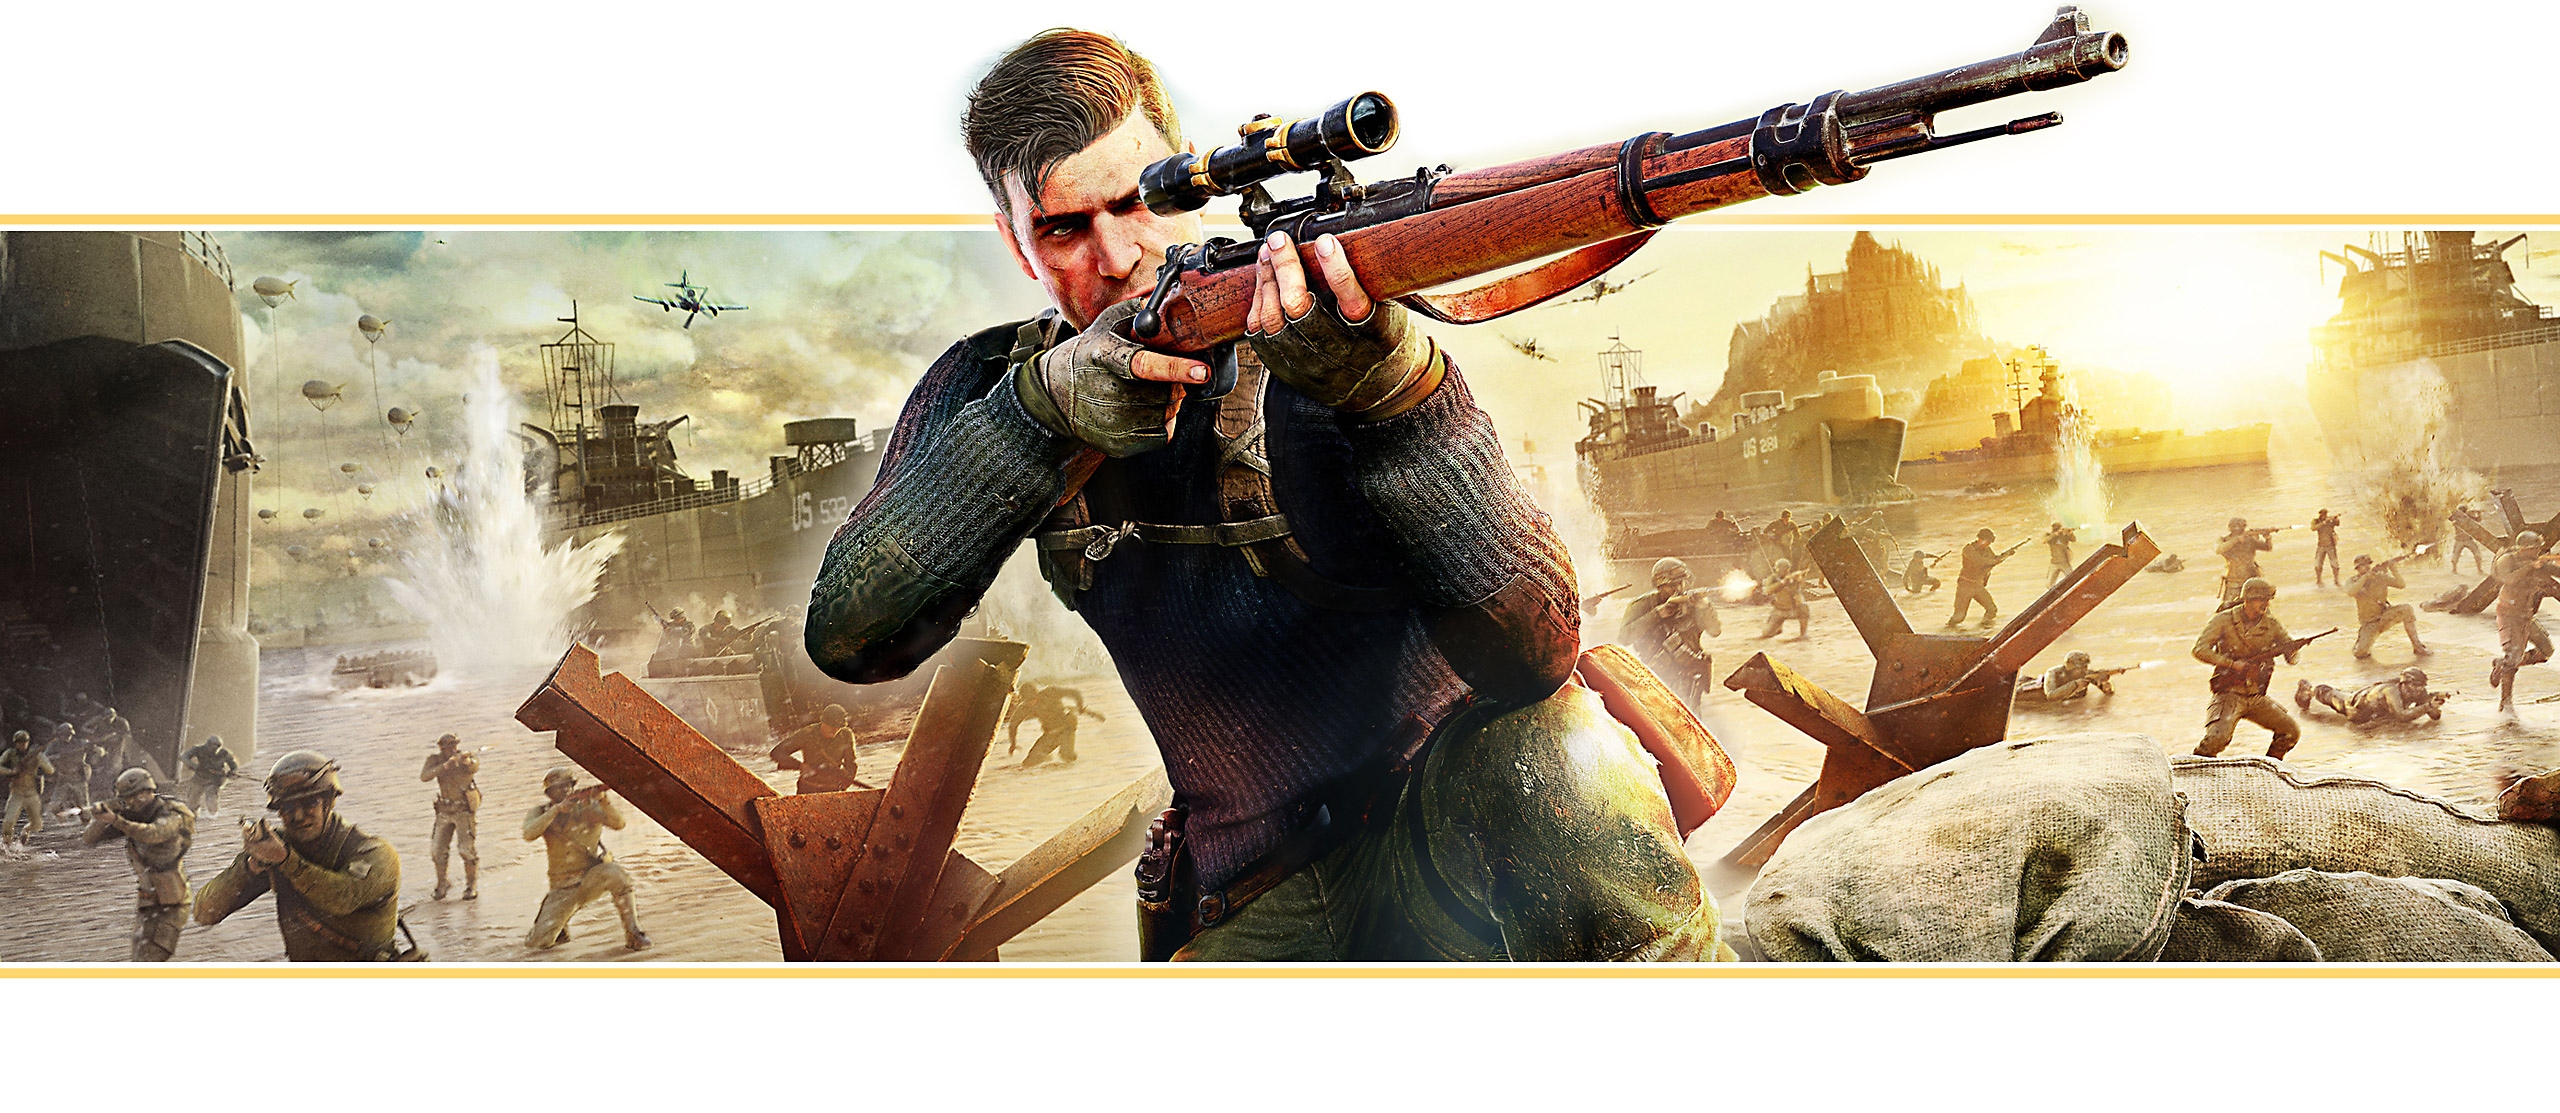 Feature-Banner von Sniper Elite 5 basierend auf Spielgrafik: Die Hauptfigur zielt mit einem Scharfschützengewehr.